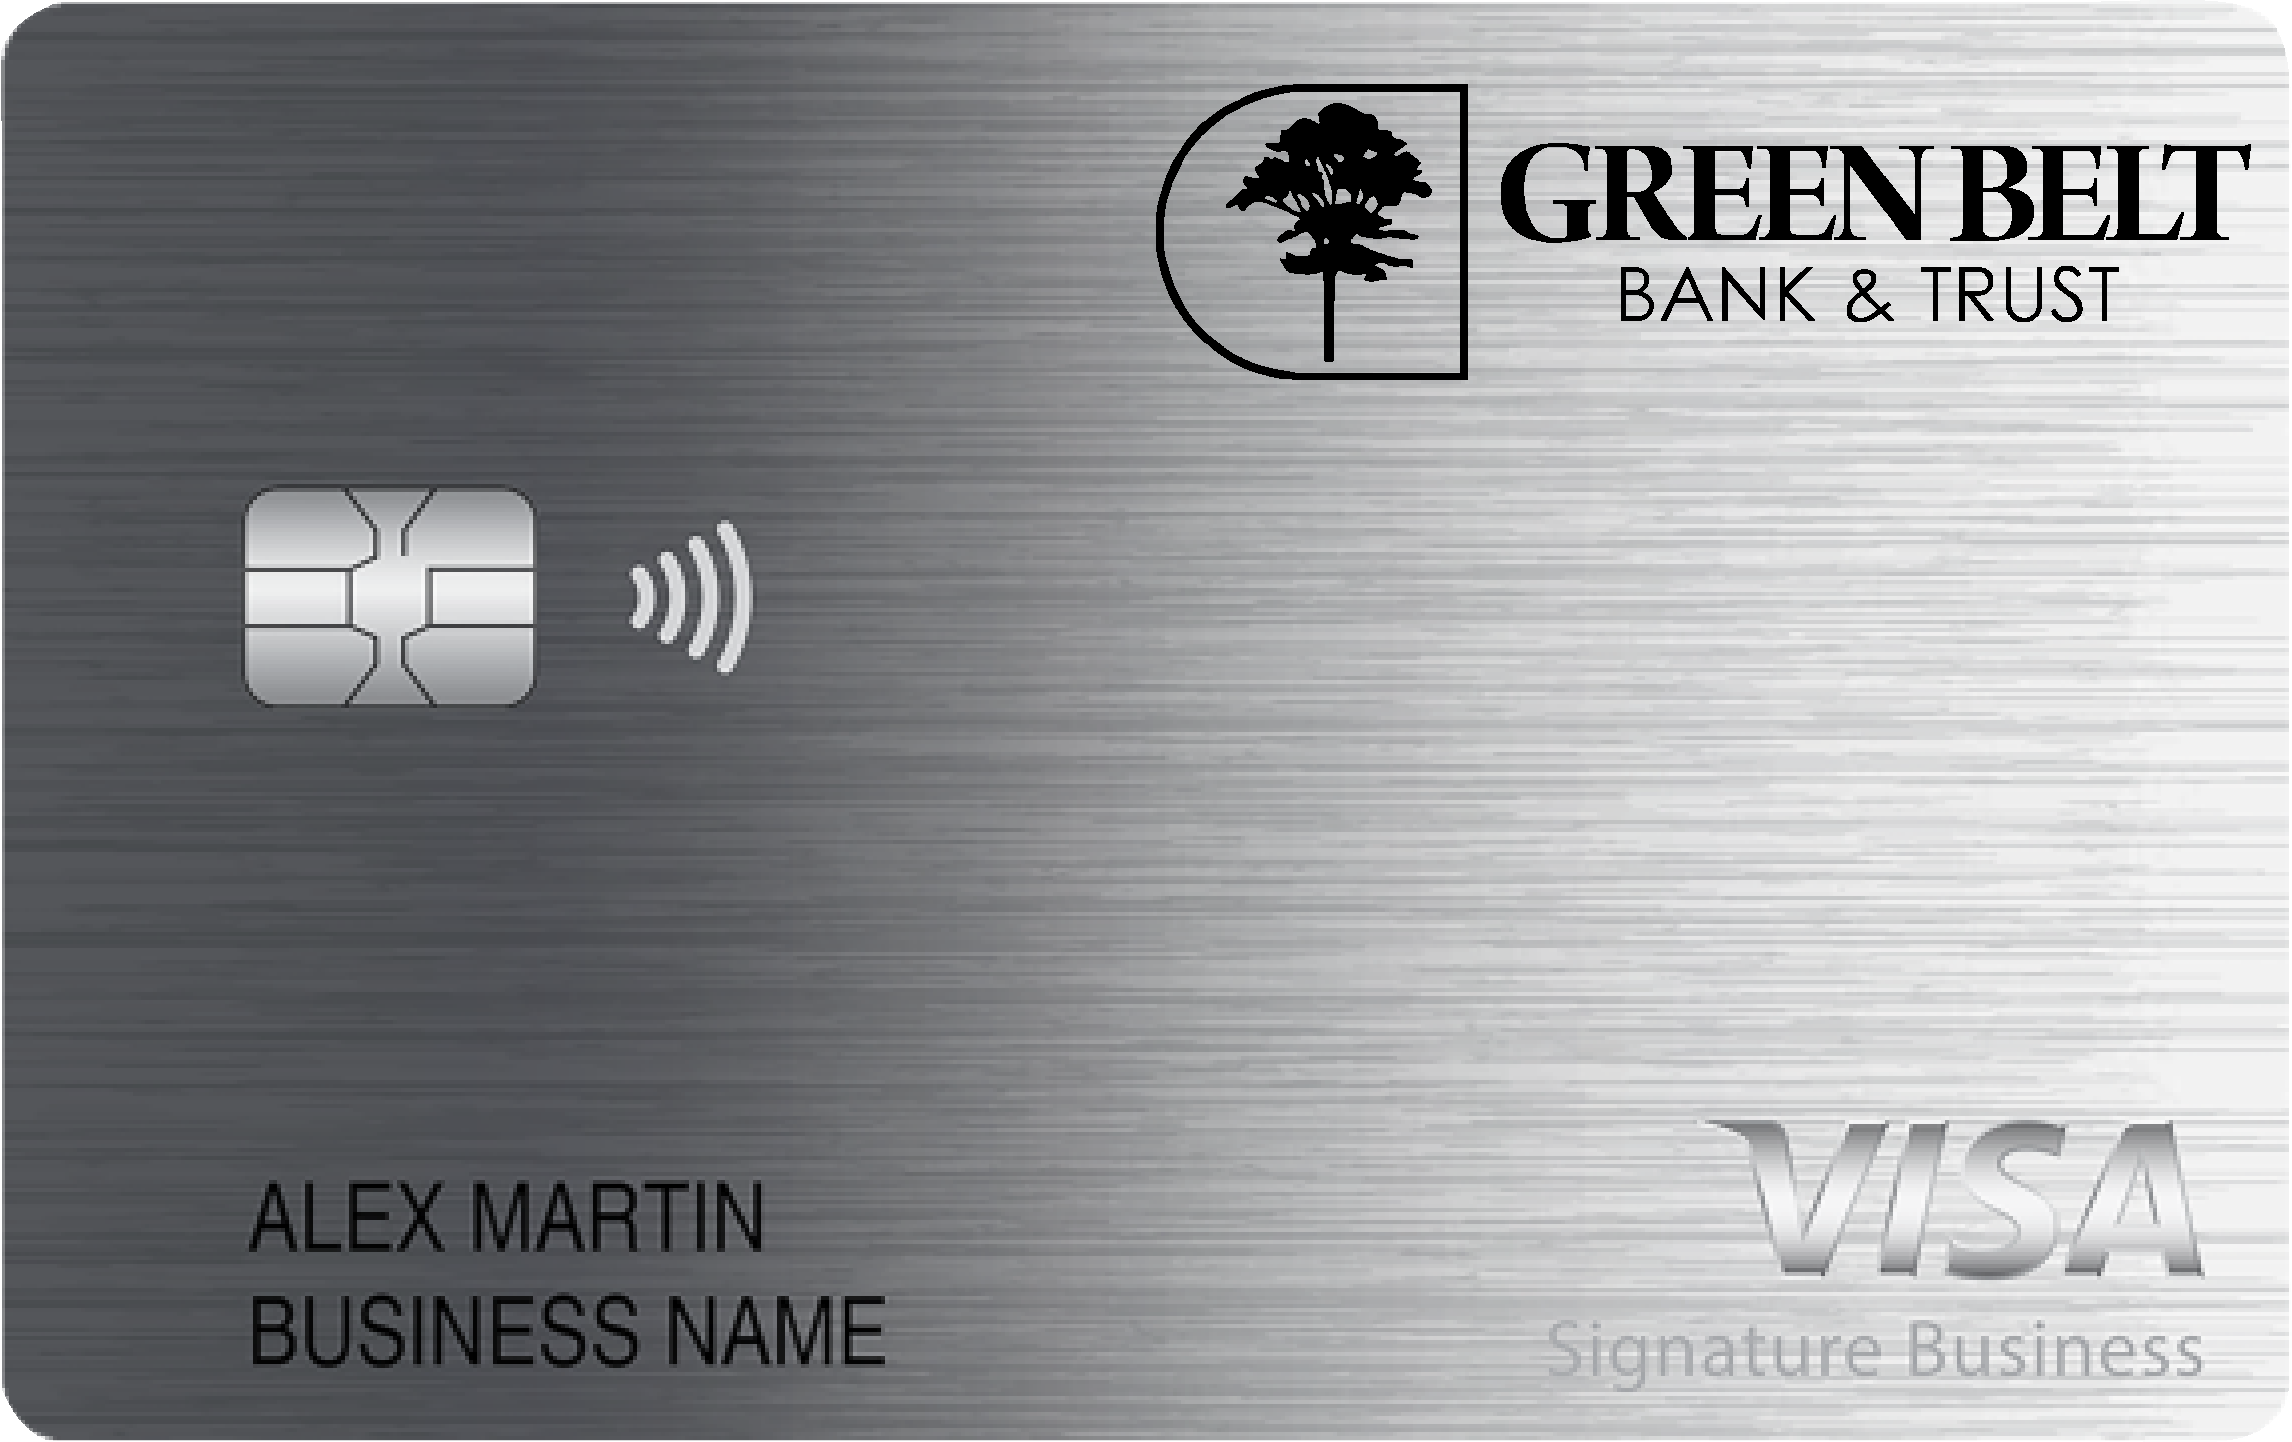 Green Belt Bank & Trust Business Card